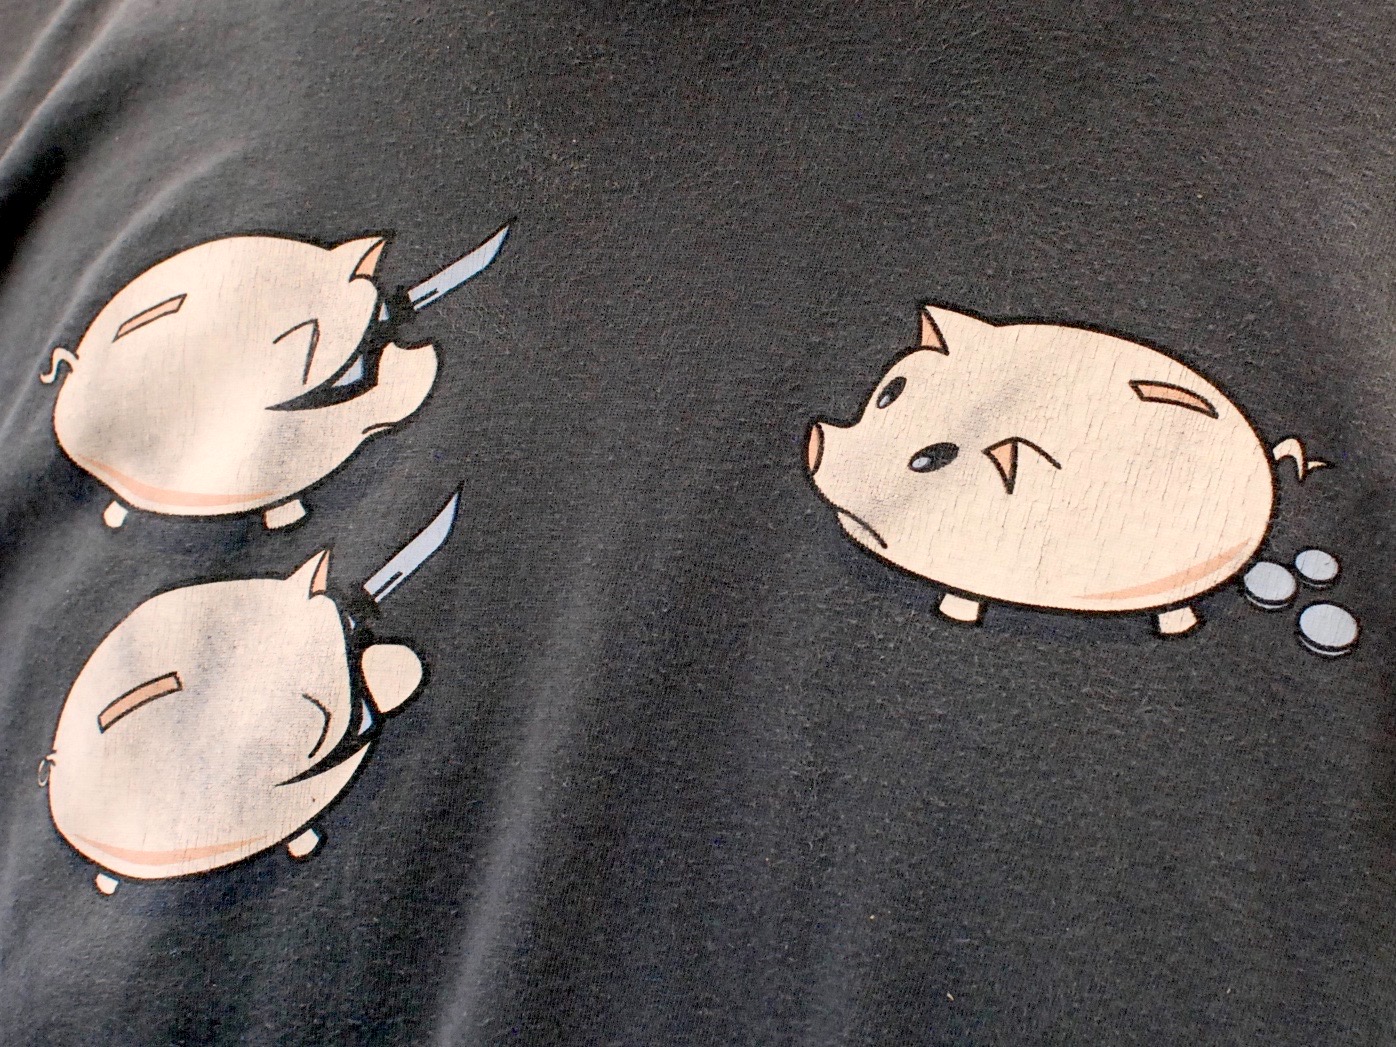 Pig T-Shirt